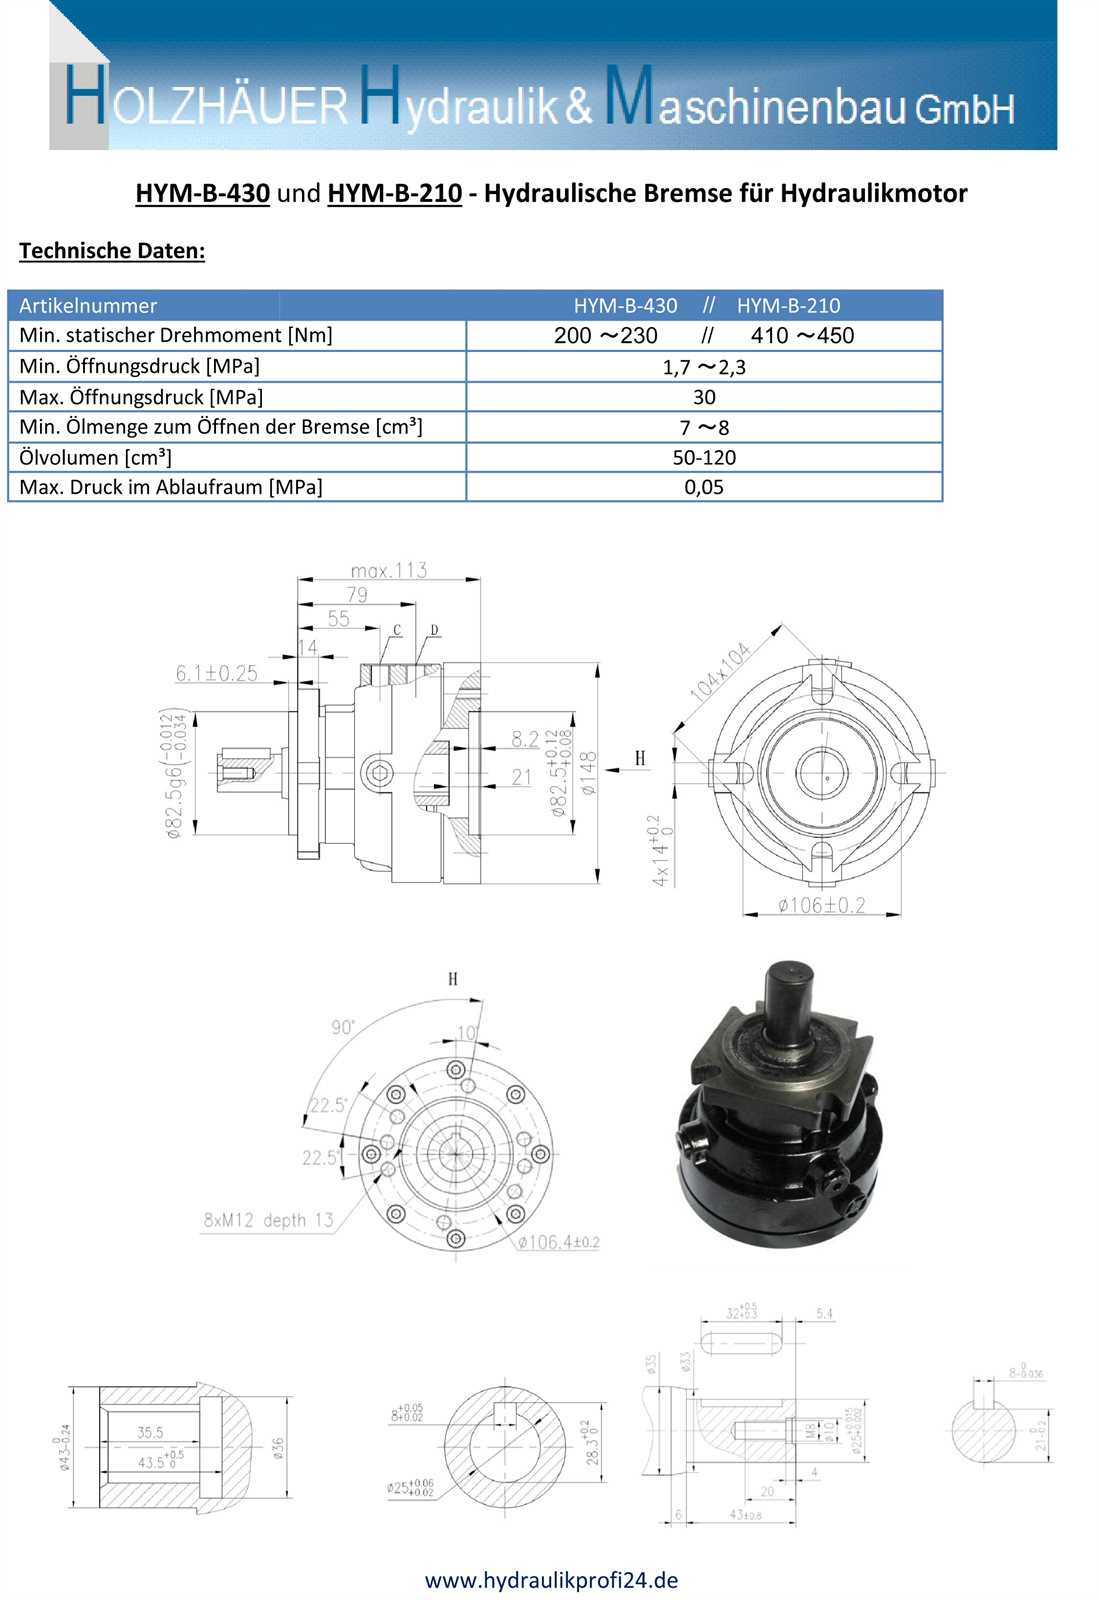 Preview: Hydraulische Bremse für Hydraulikmotor 25 mm Welle Nm-430 HMP HMR